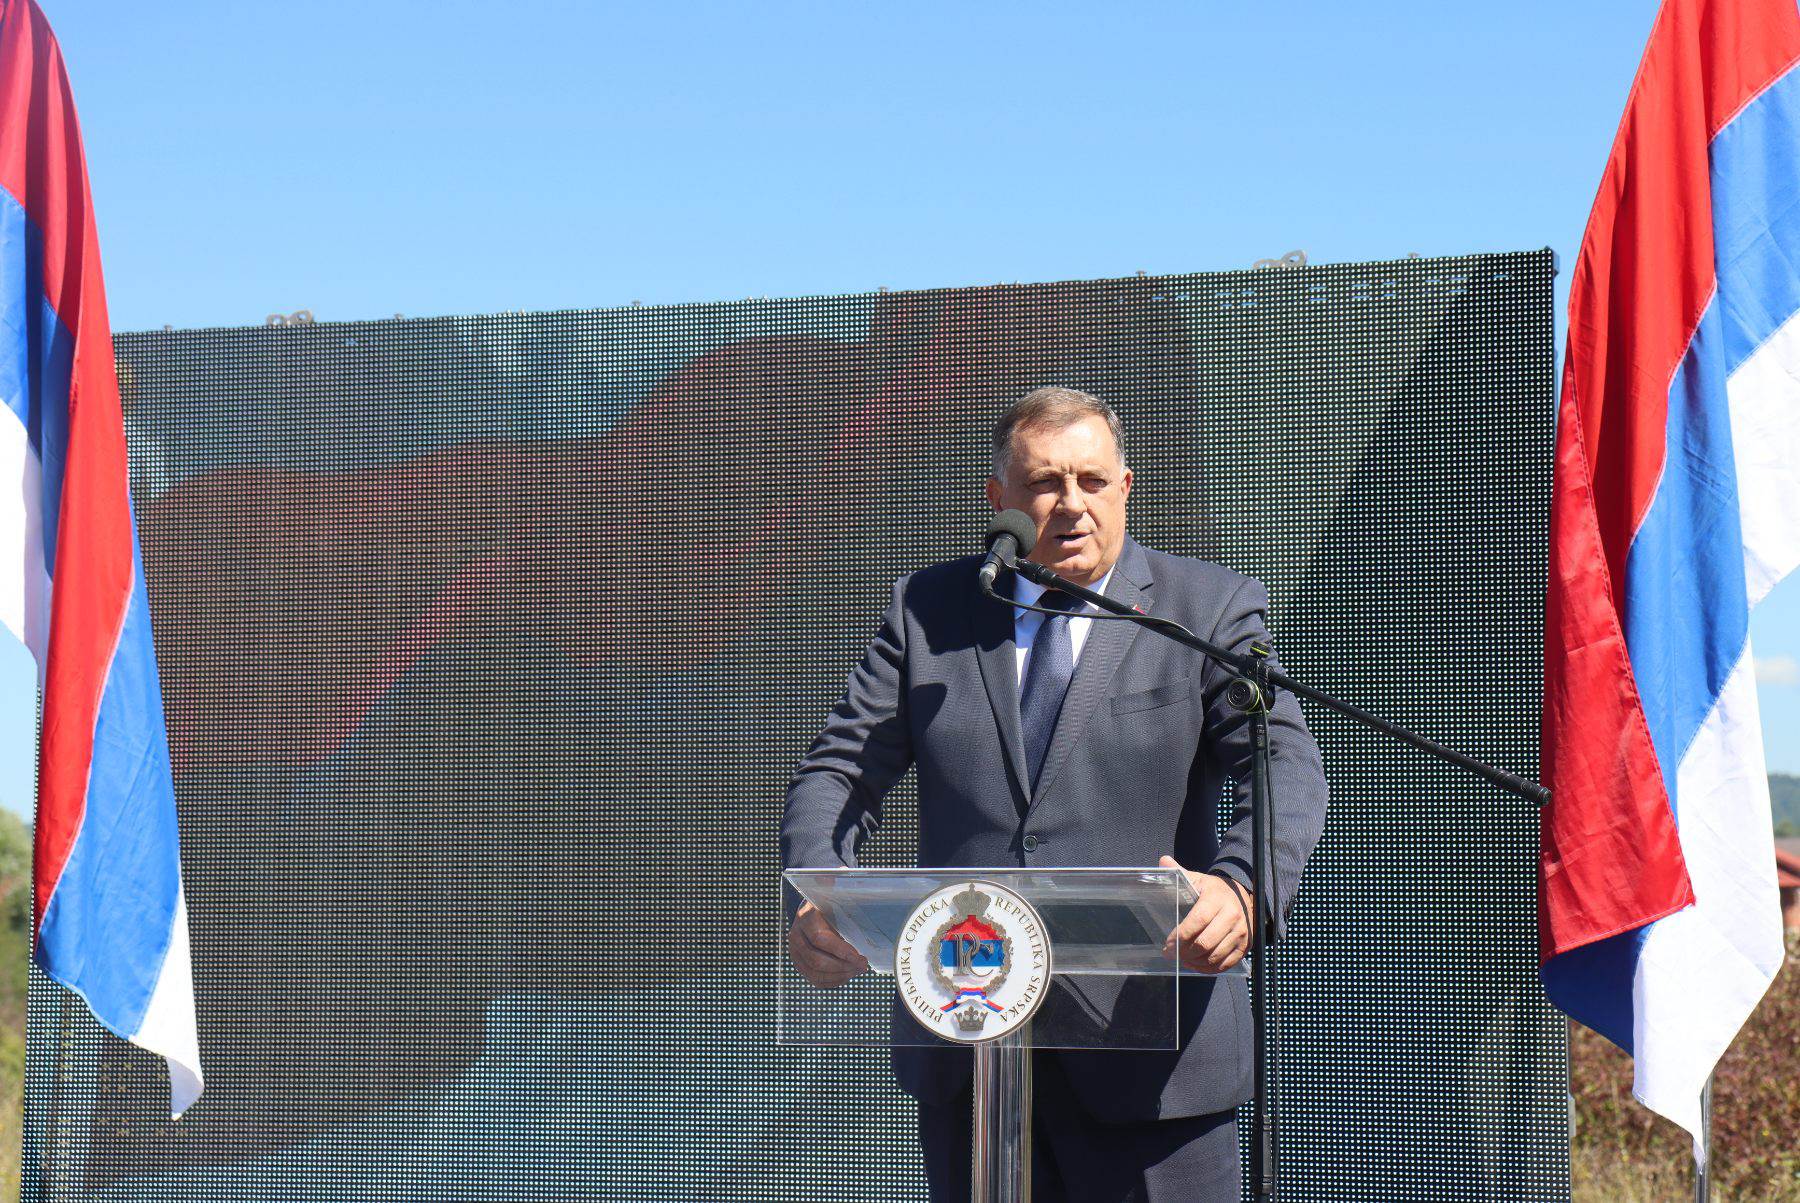  Dodik: Granica postoji i u razgraničenju i u strpljenju 